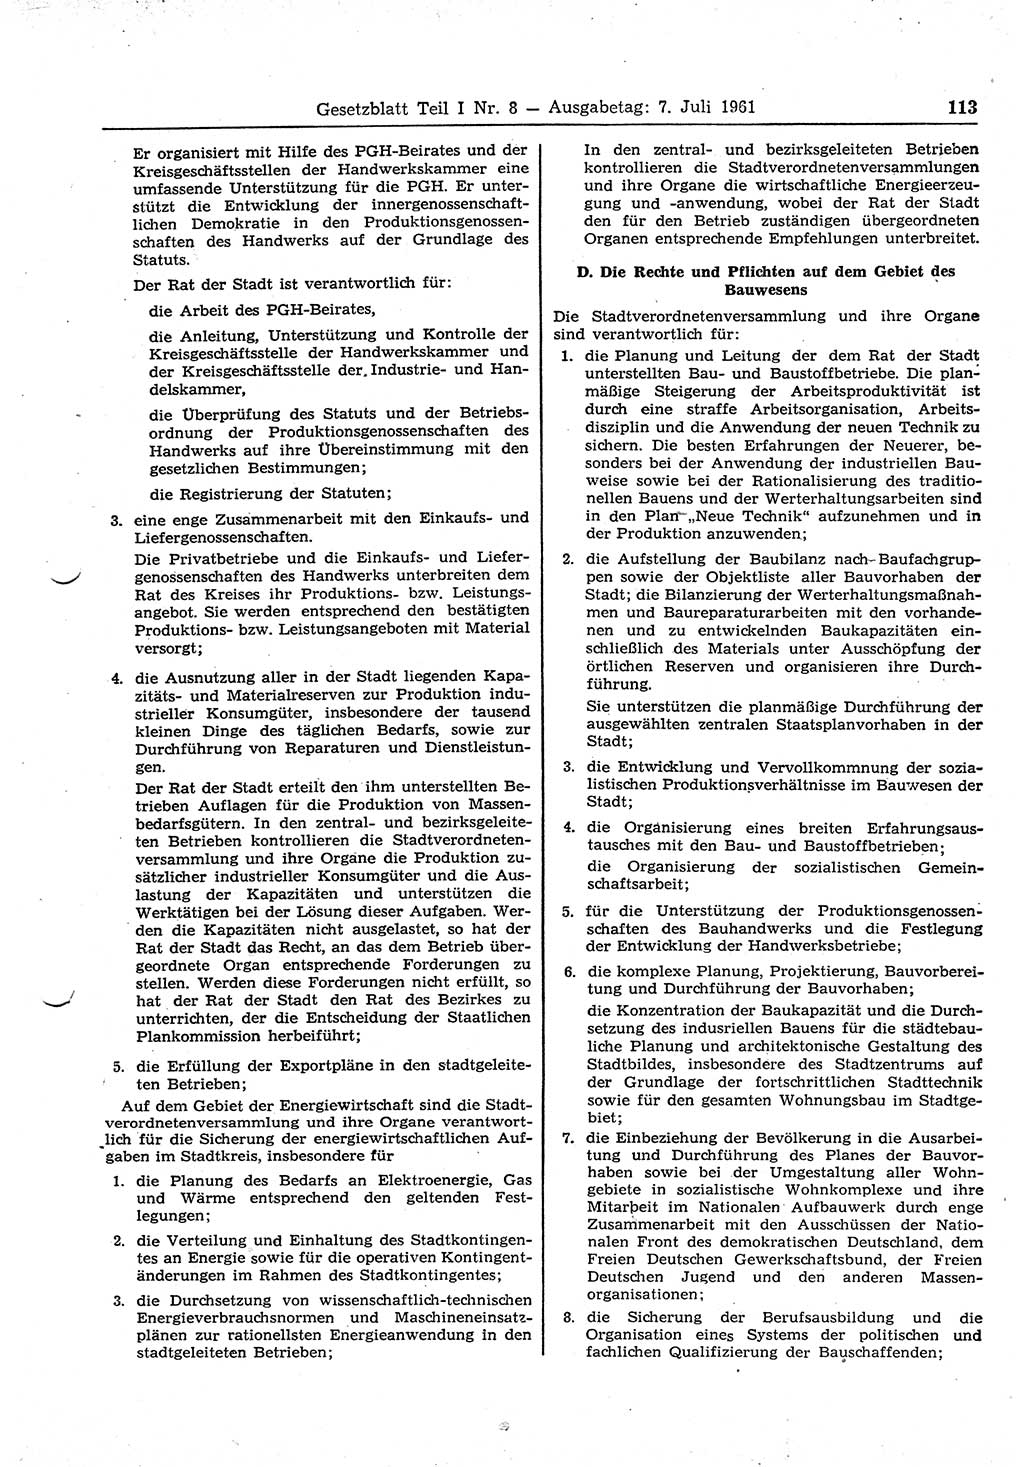 Gesetzblatt (GBl.) der Deutschen Demokratischen Republik (DDR) Teil Ⅰ 1961, Seite 113 (GBl. DDR Ⅰ 1961, S. 113)